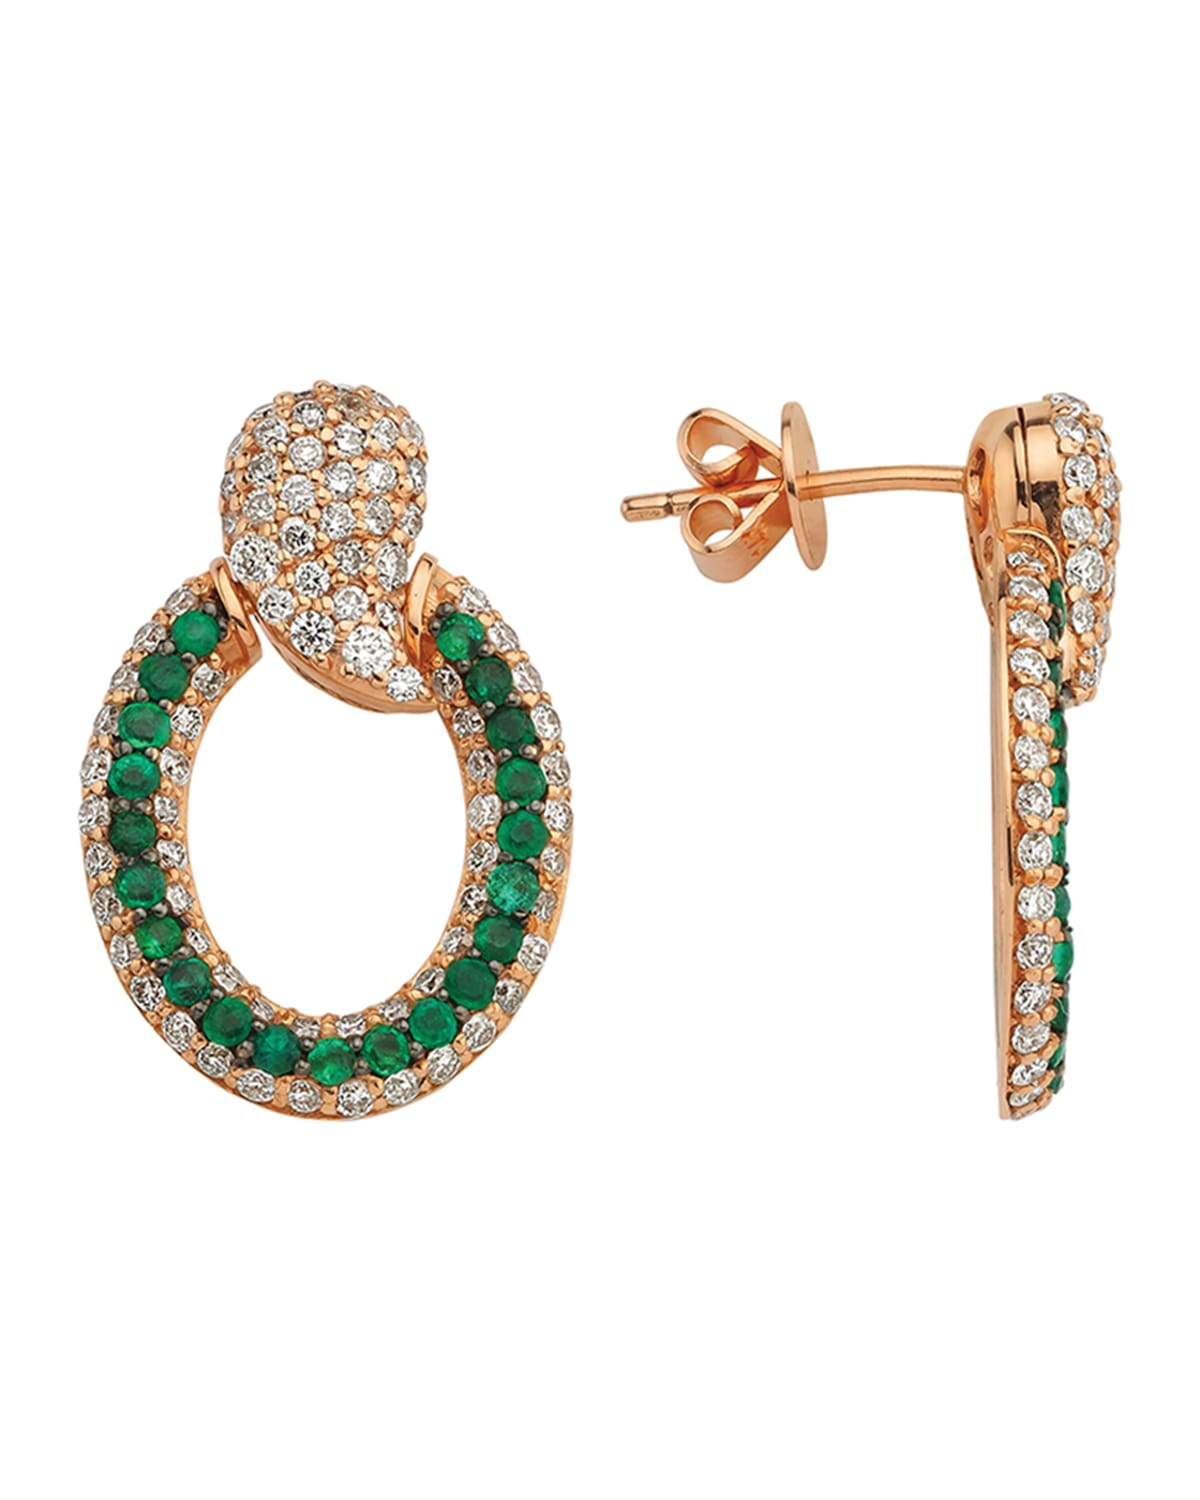 BeeGoddess 14k Rose Gold Emerald and Diamond Door Knocker Earrings